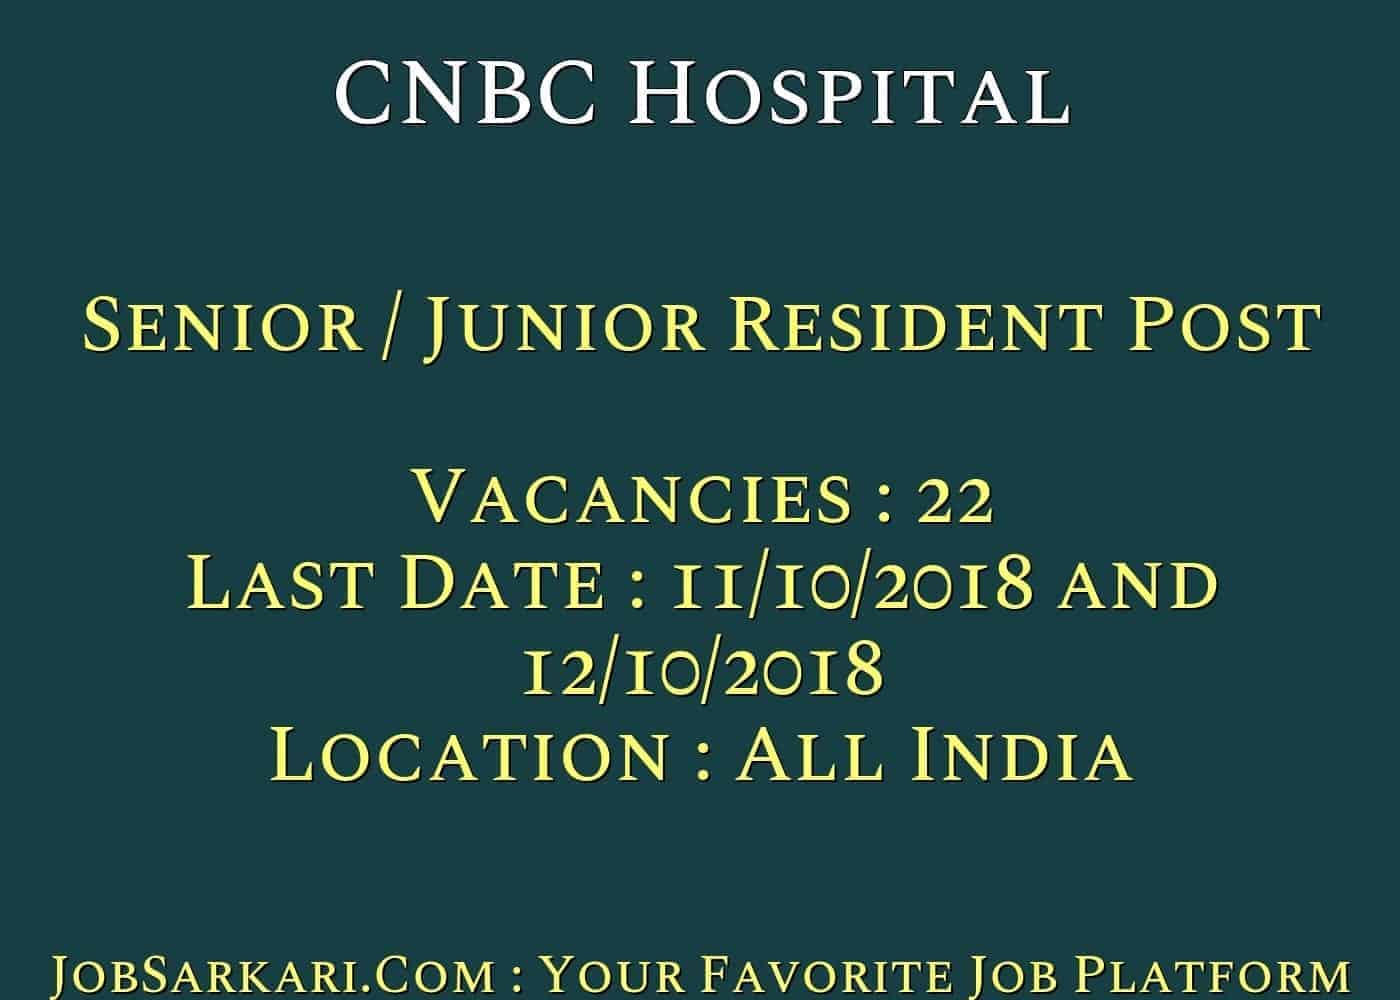 CNBC Hospital Recruitment 2018 for Senior / Junior Resident Post